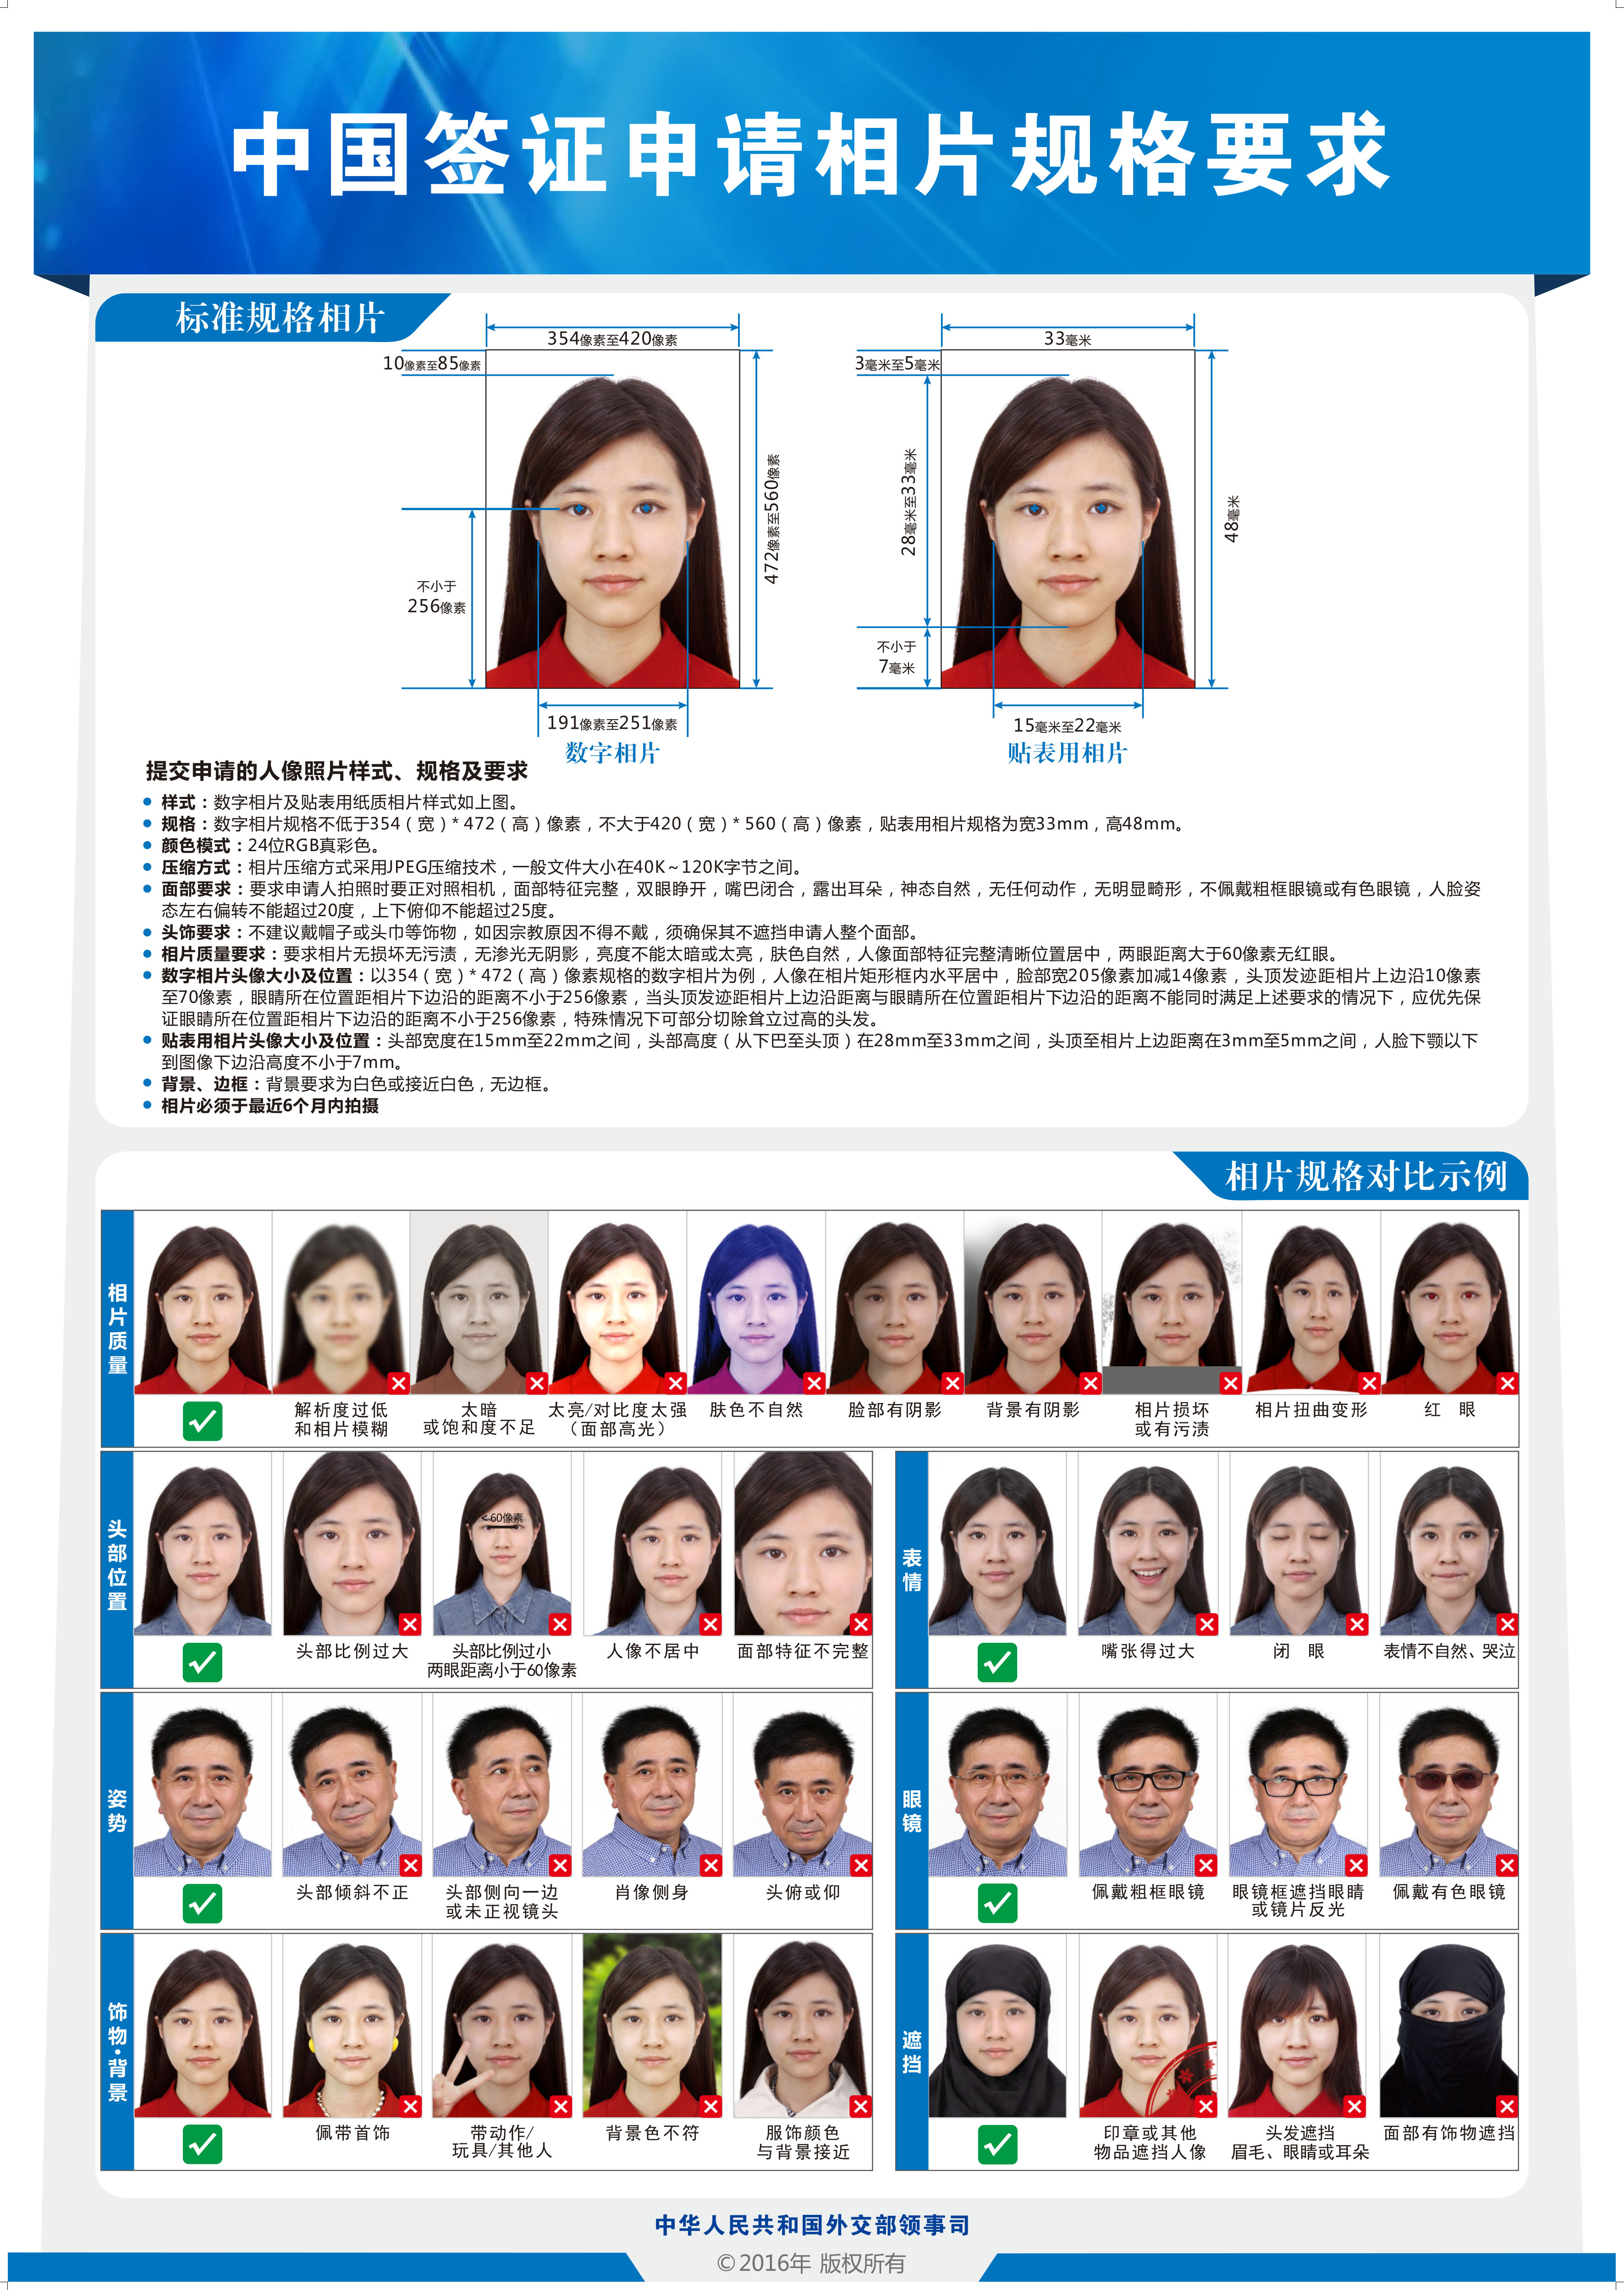 China visa photo